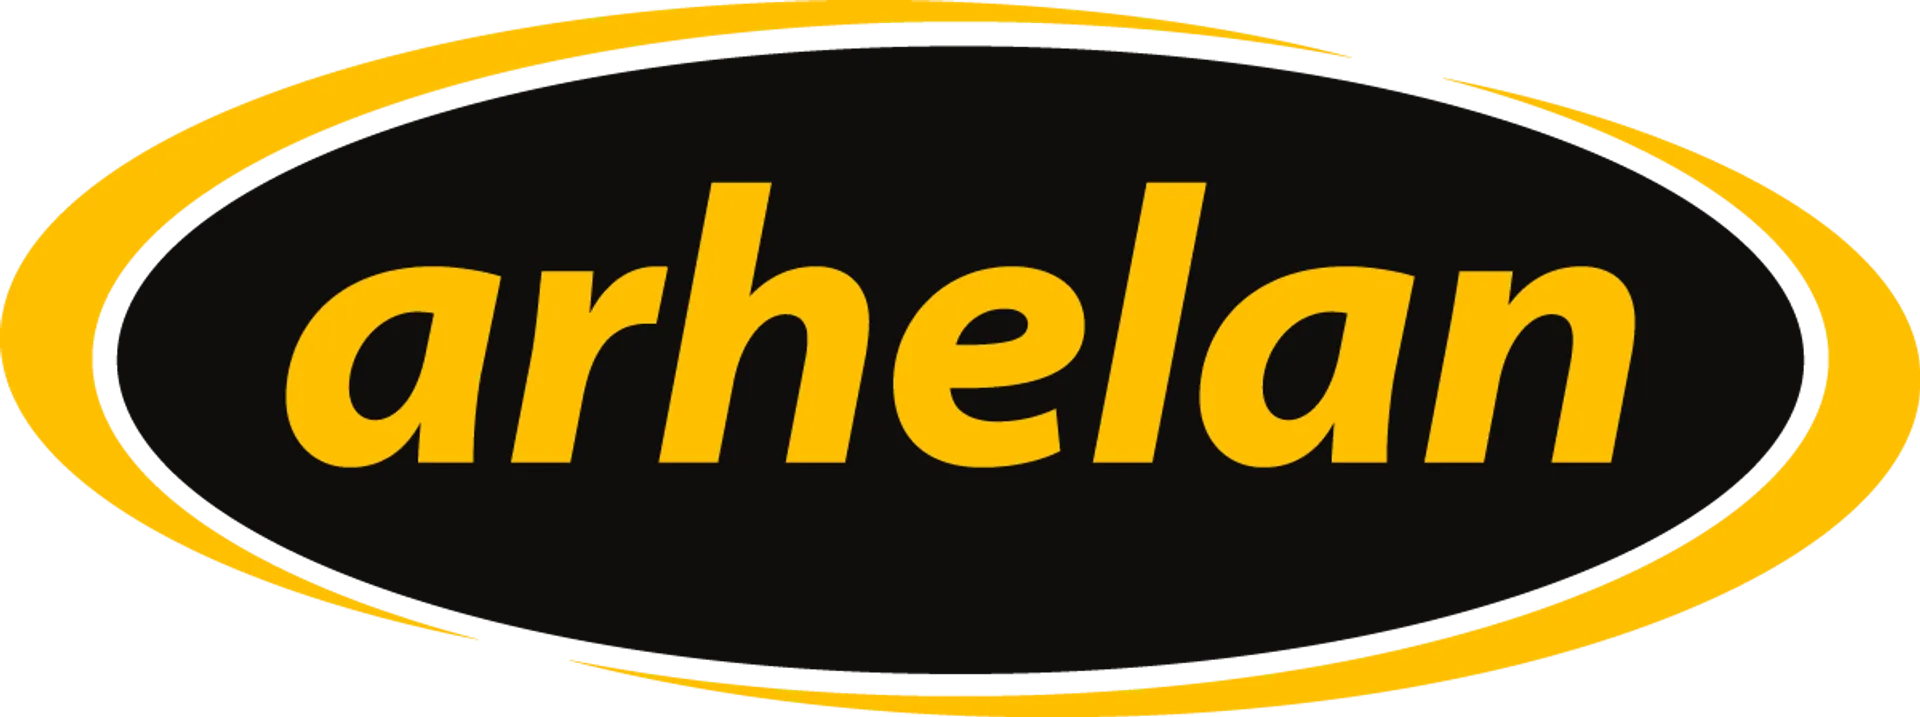 ARHELAN logo